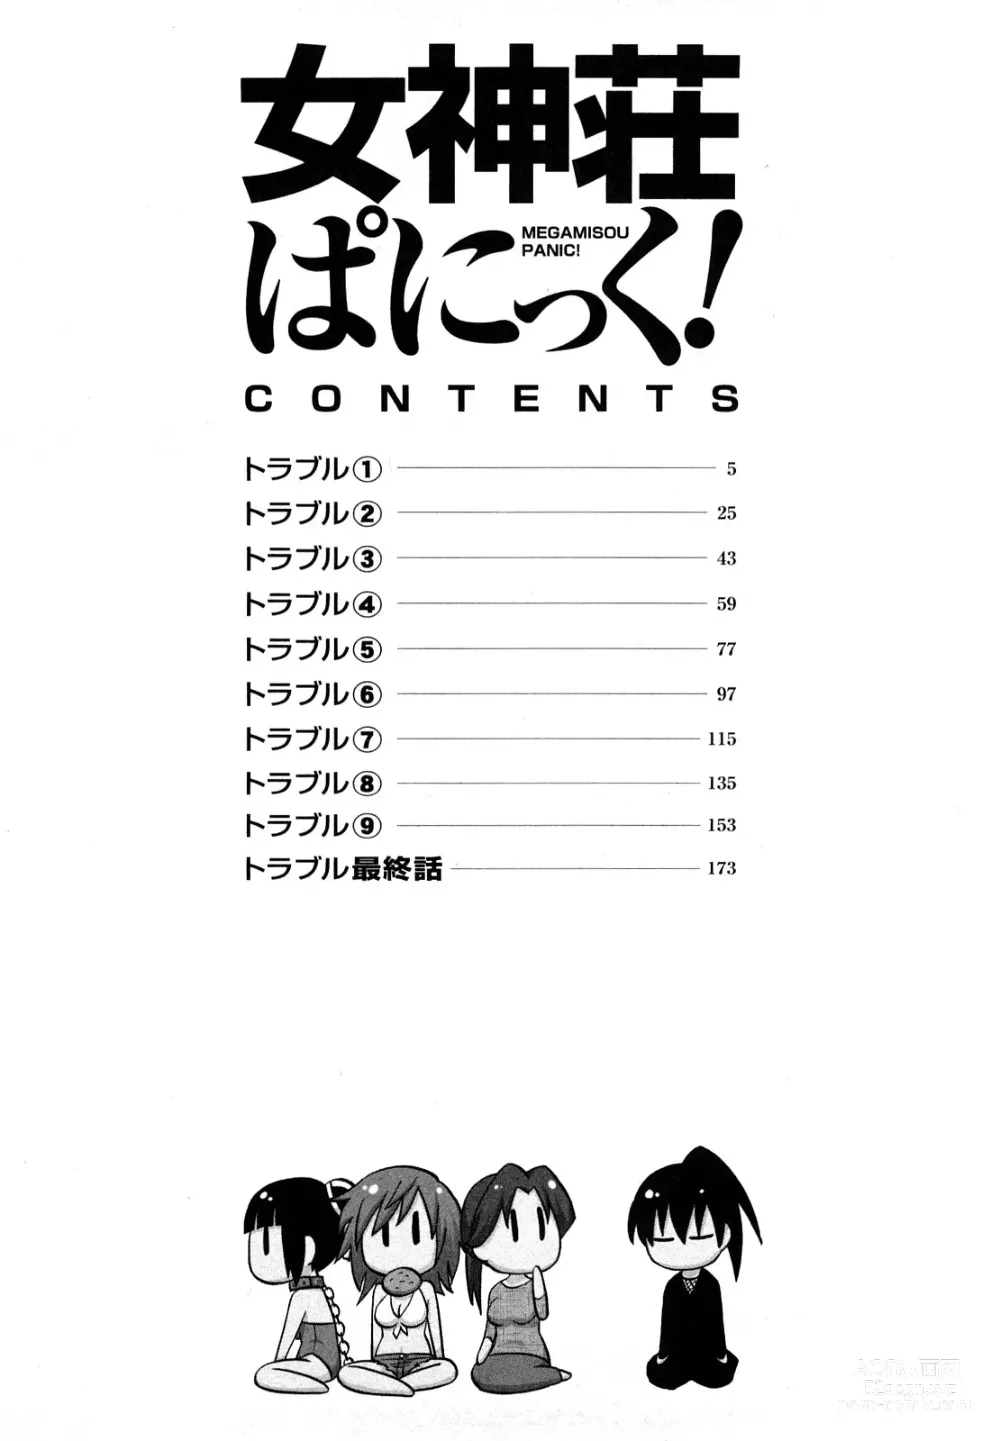 Page 4 of manga Megamisou Panic!